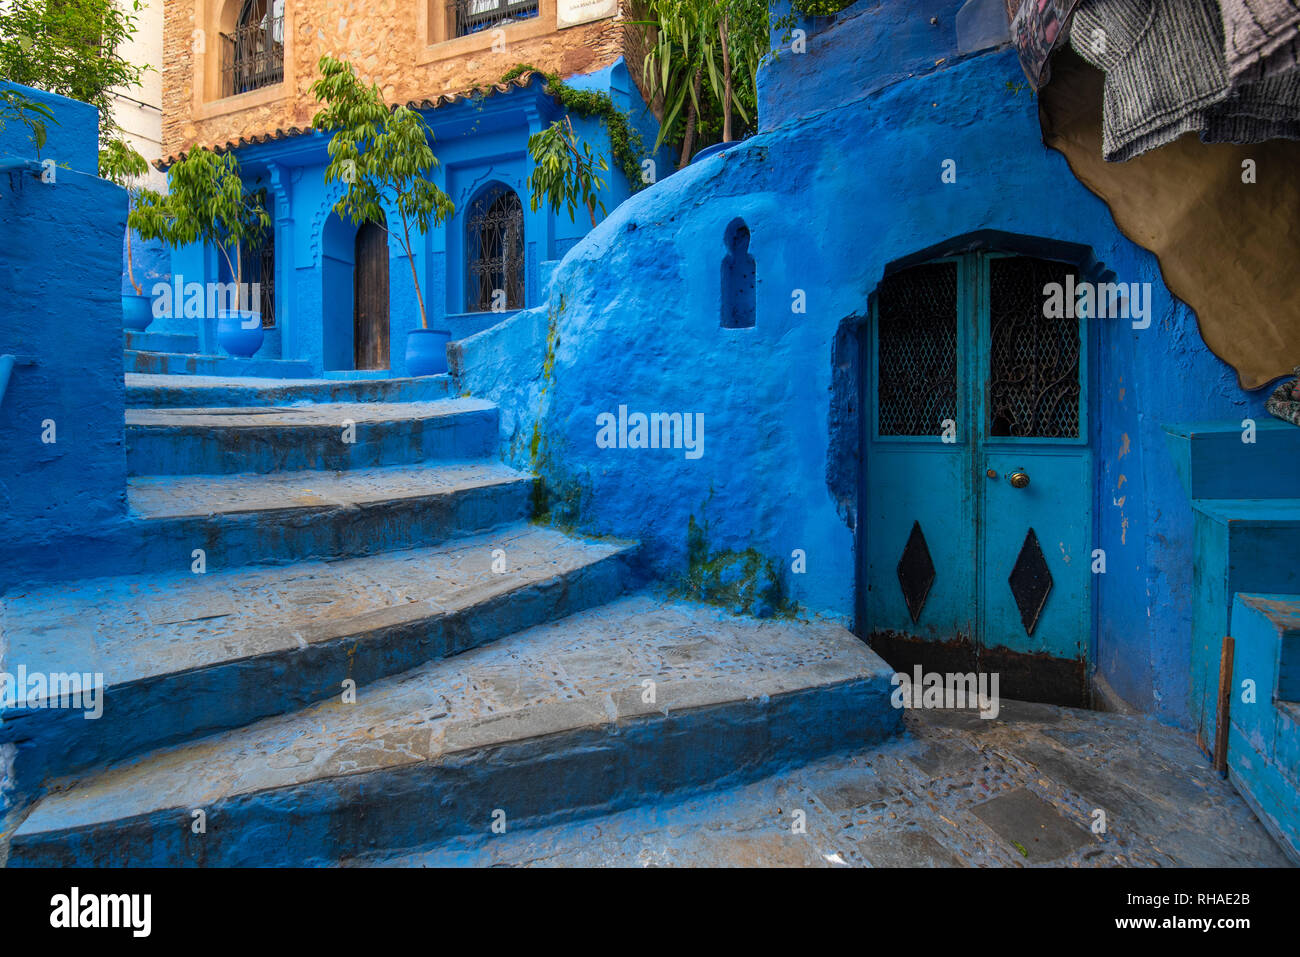 Bellissima vista della città blu CHEFCHAOUEN, Marocco nella medina. Marocchino tradizionale dettagli architettonici e case dipinte e sportello Foto Stock